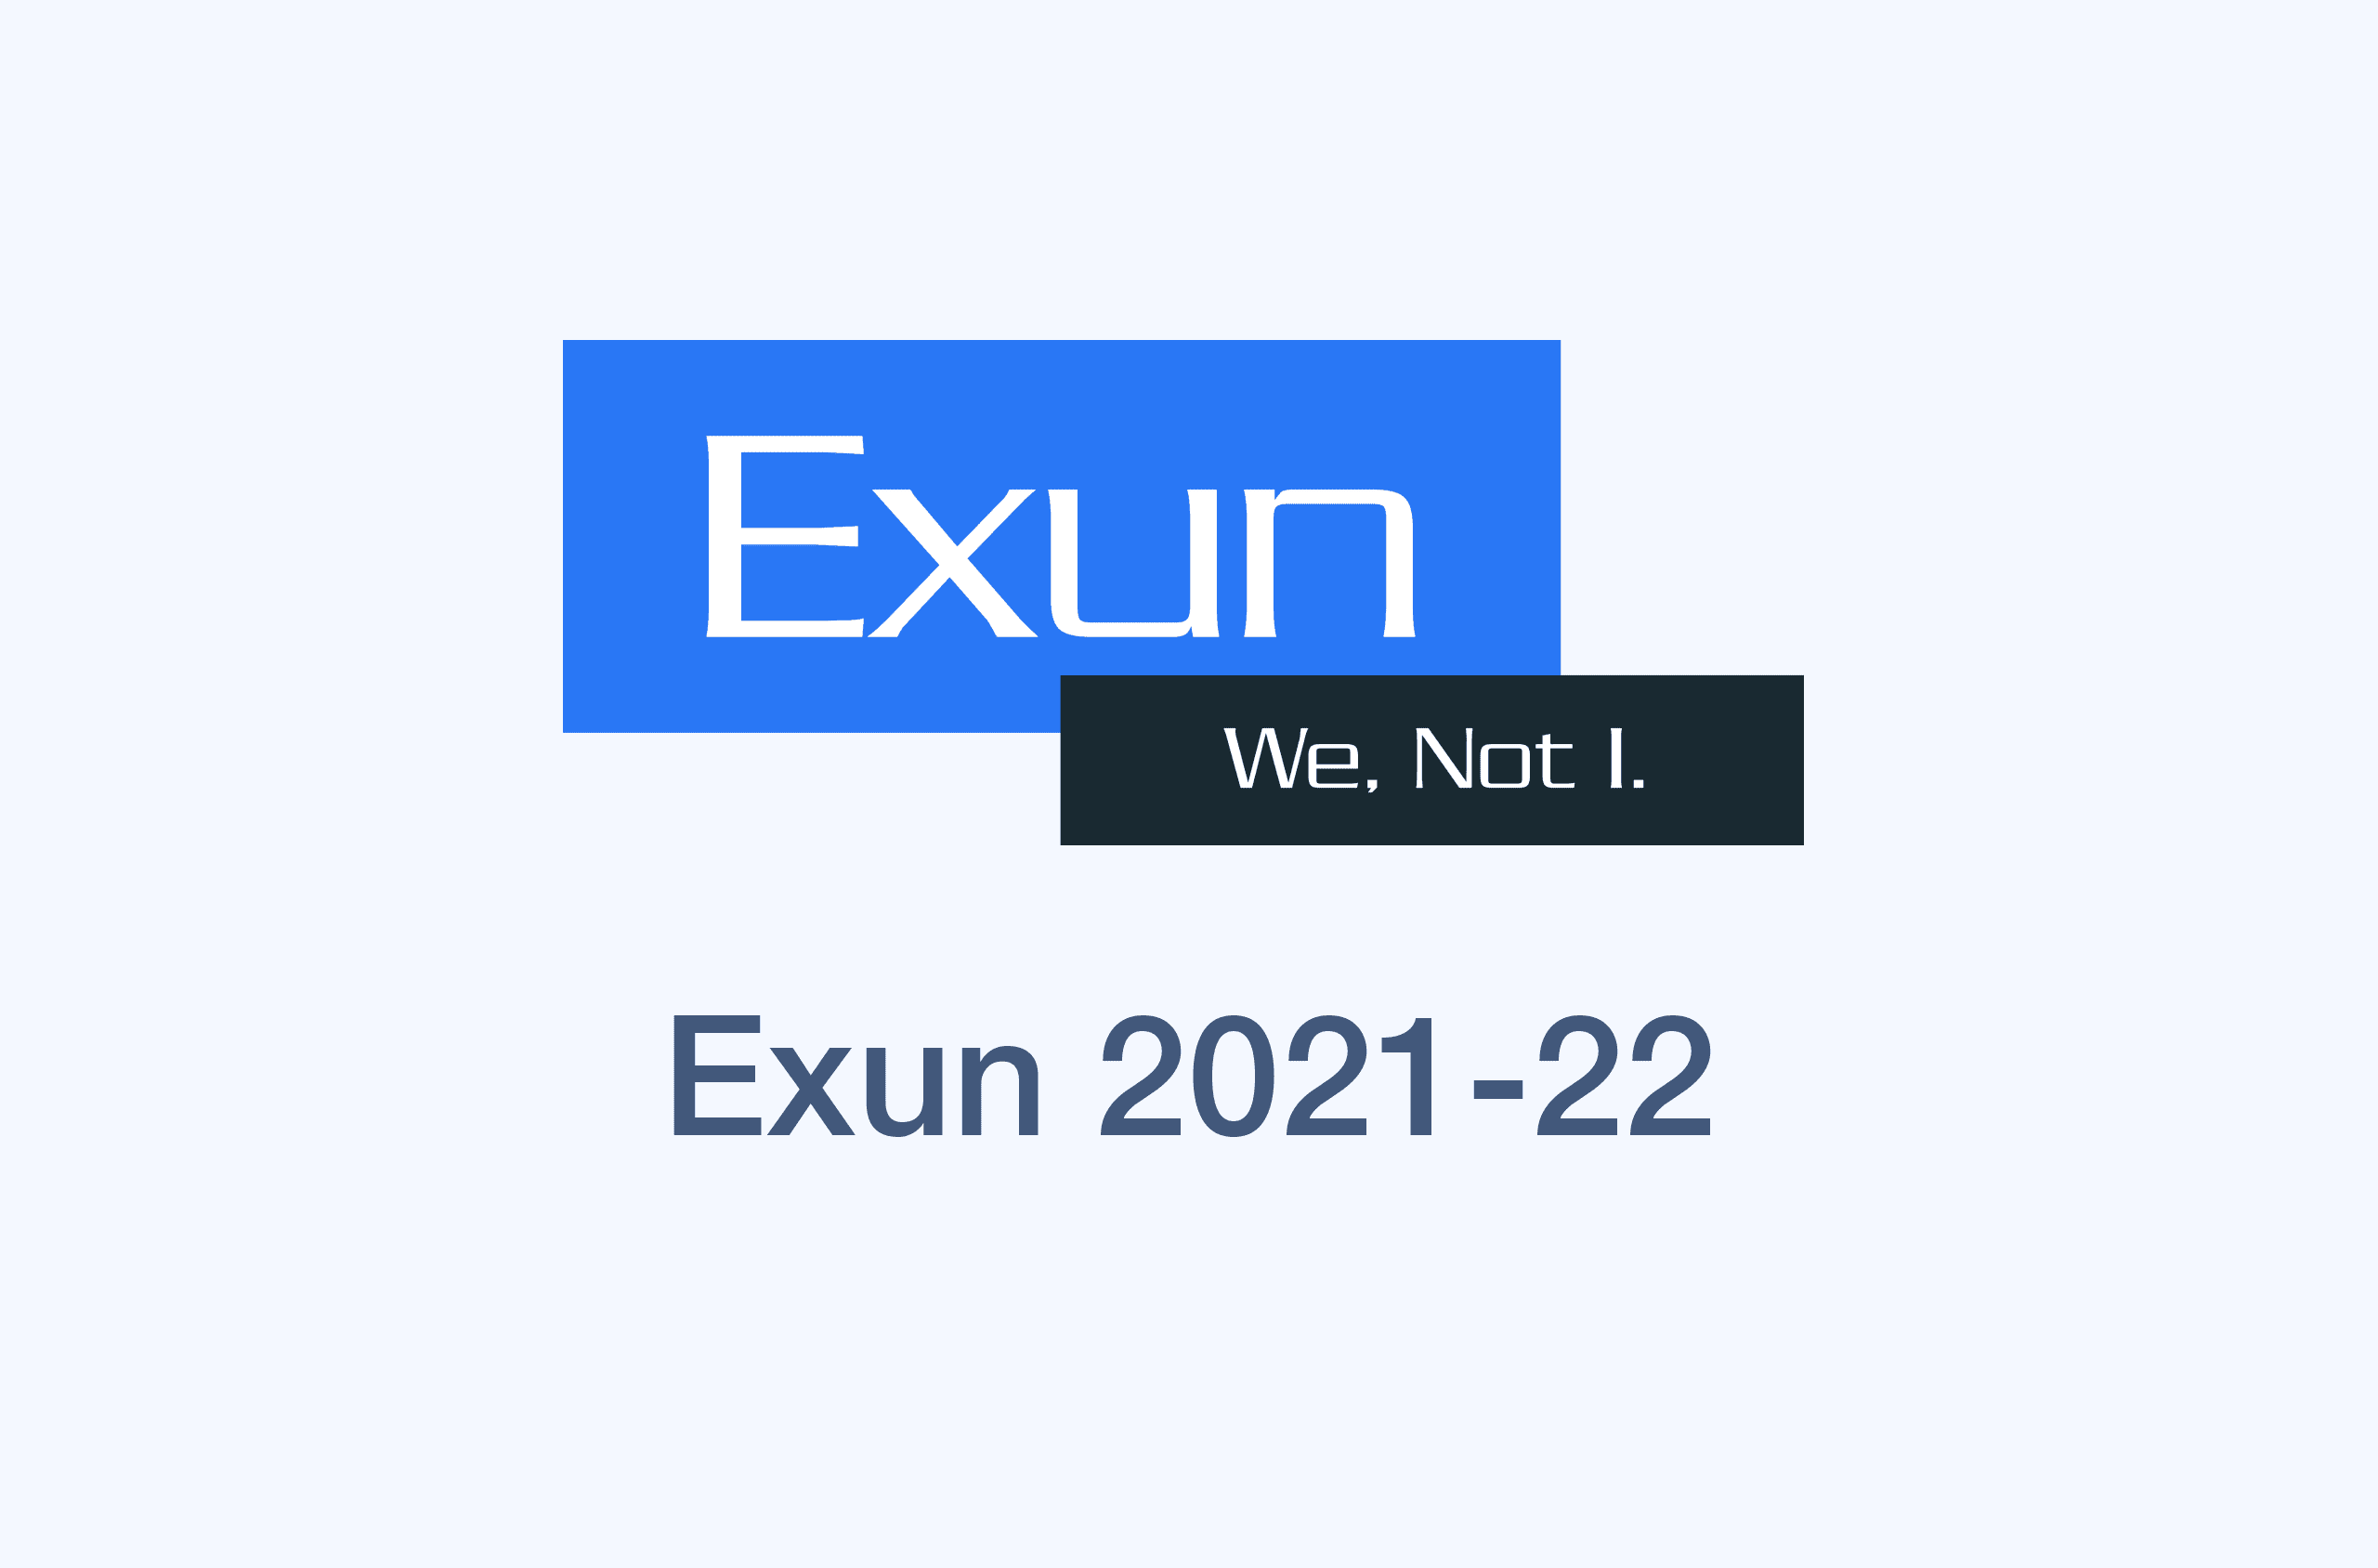 Exun 2021-22's image